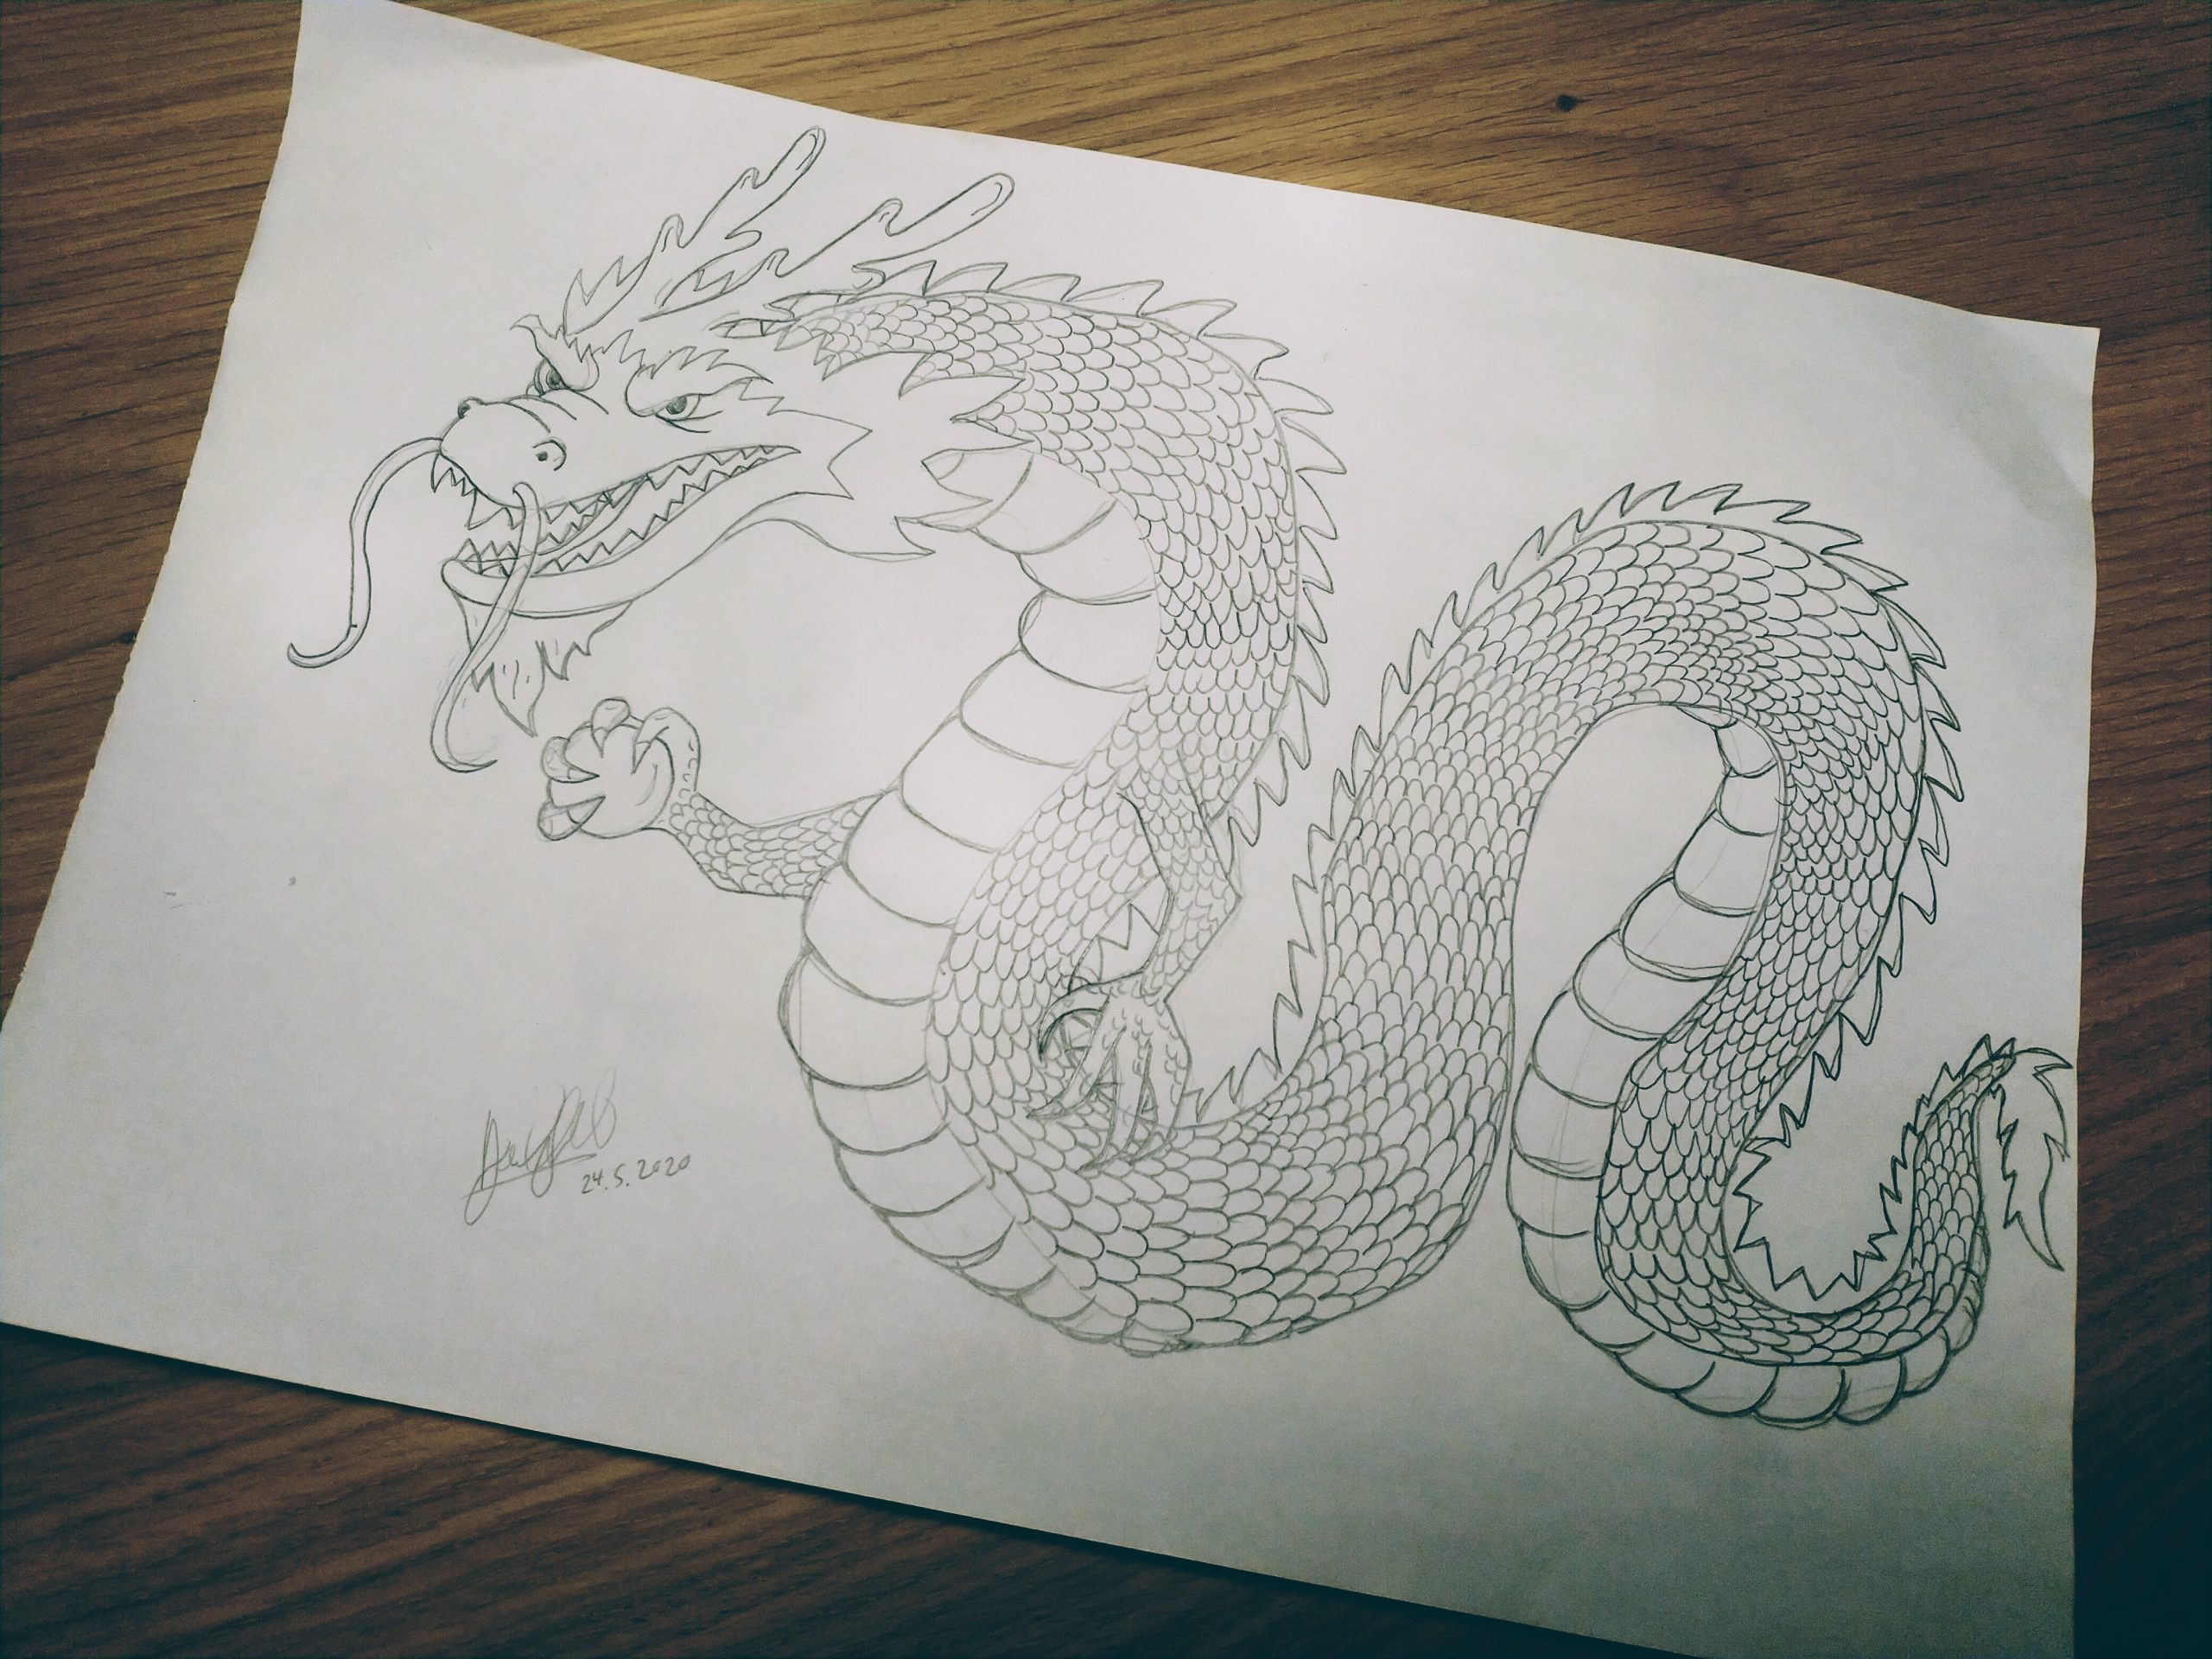 ArtStation - Dragon pencil sketch